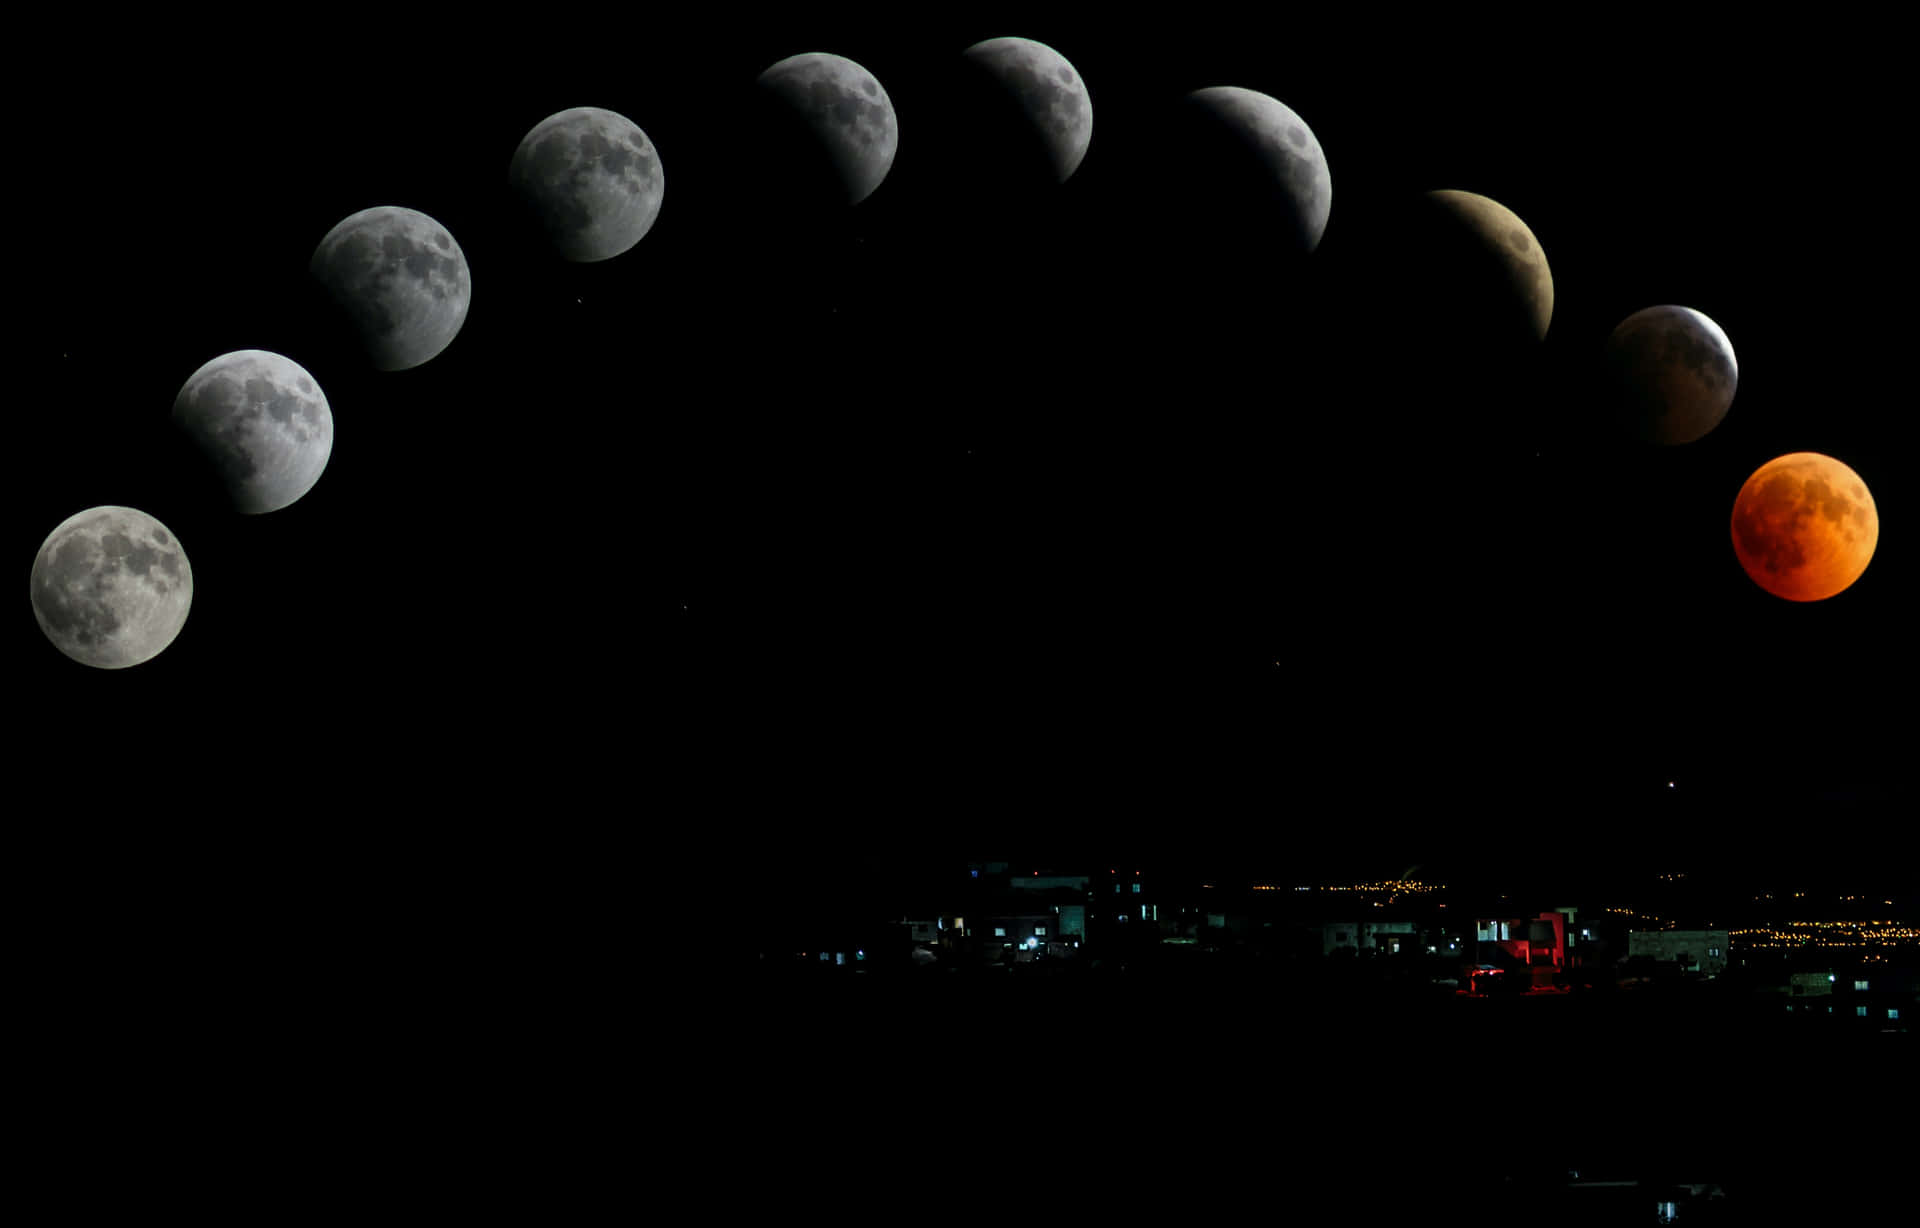 Imagemdas Fases Da Lua.